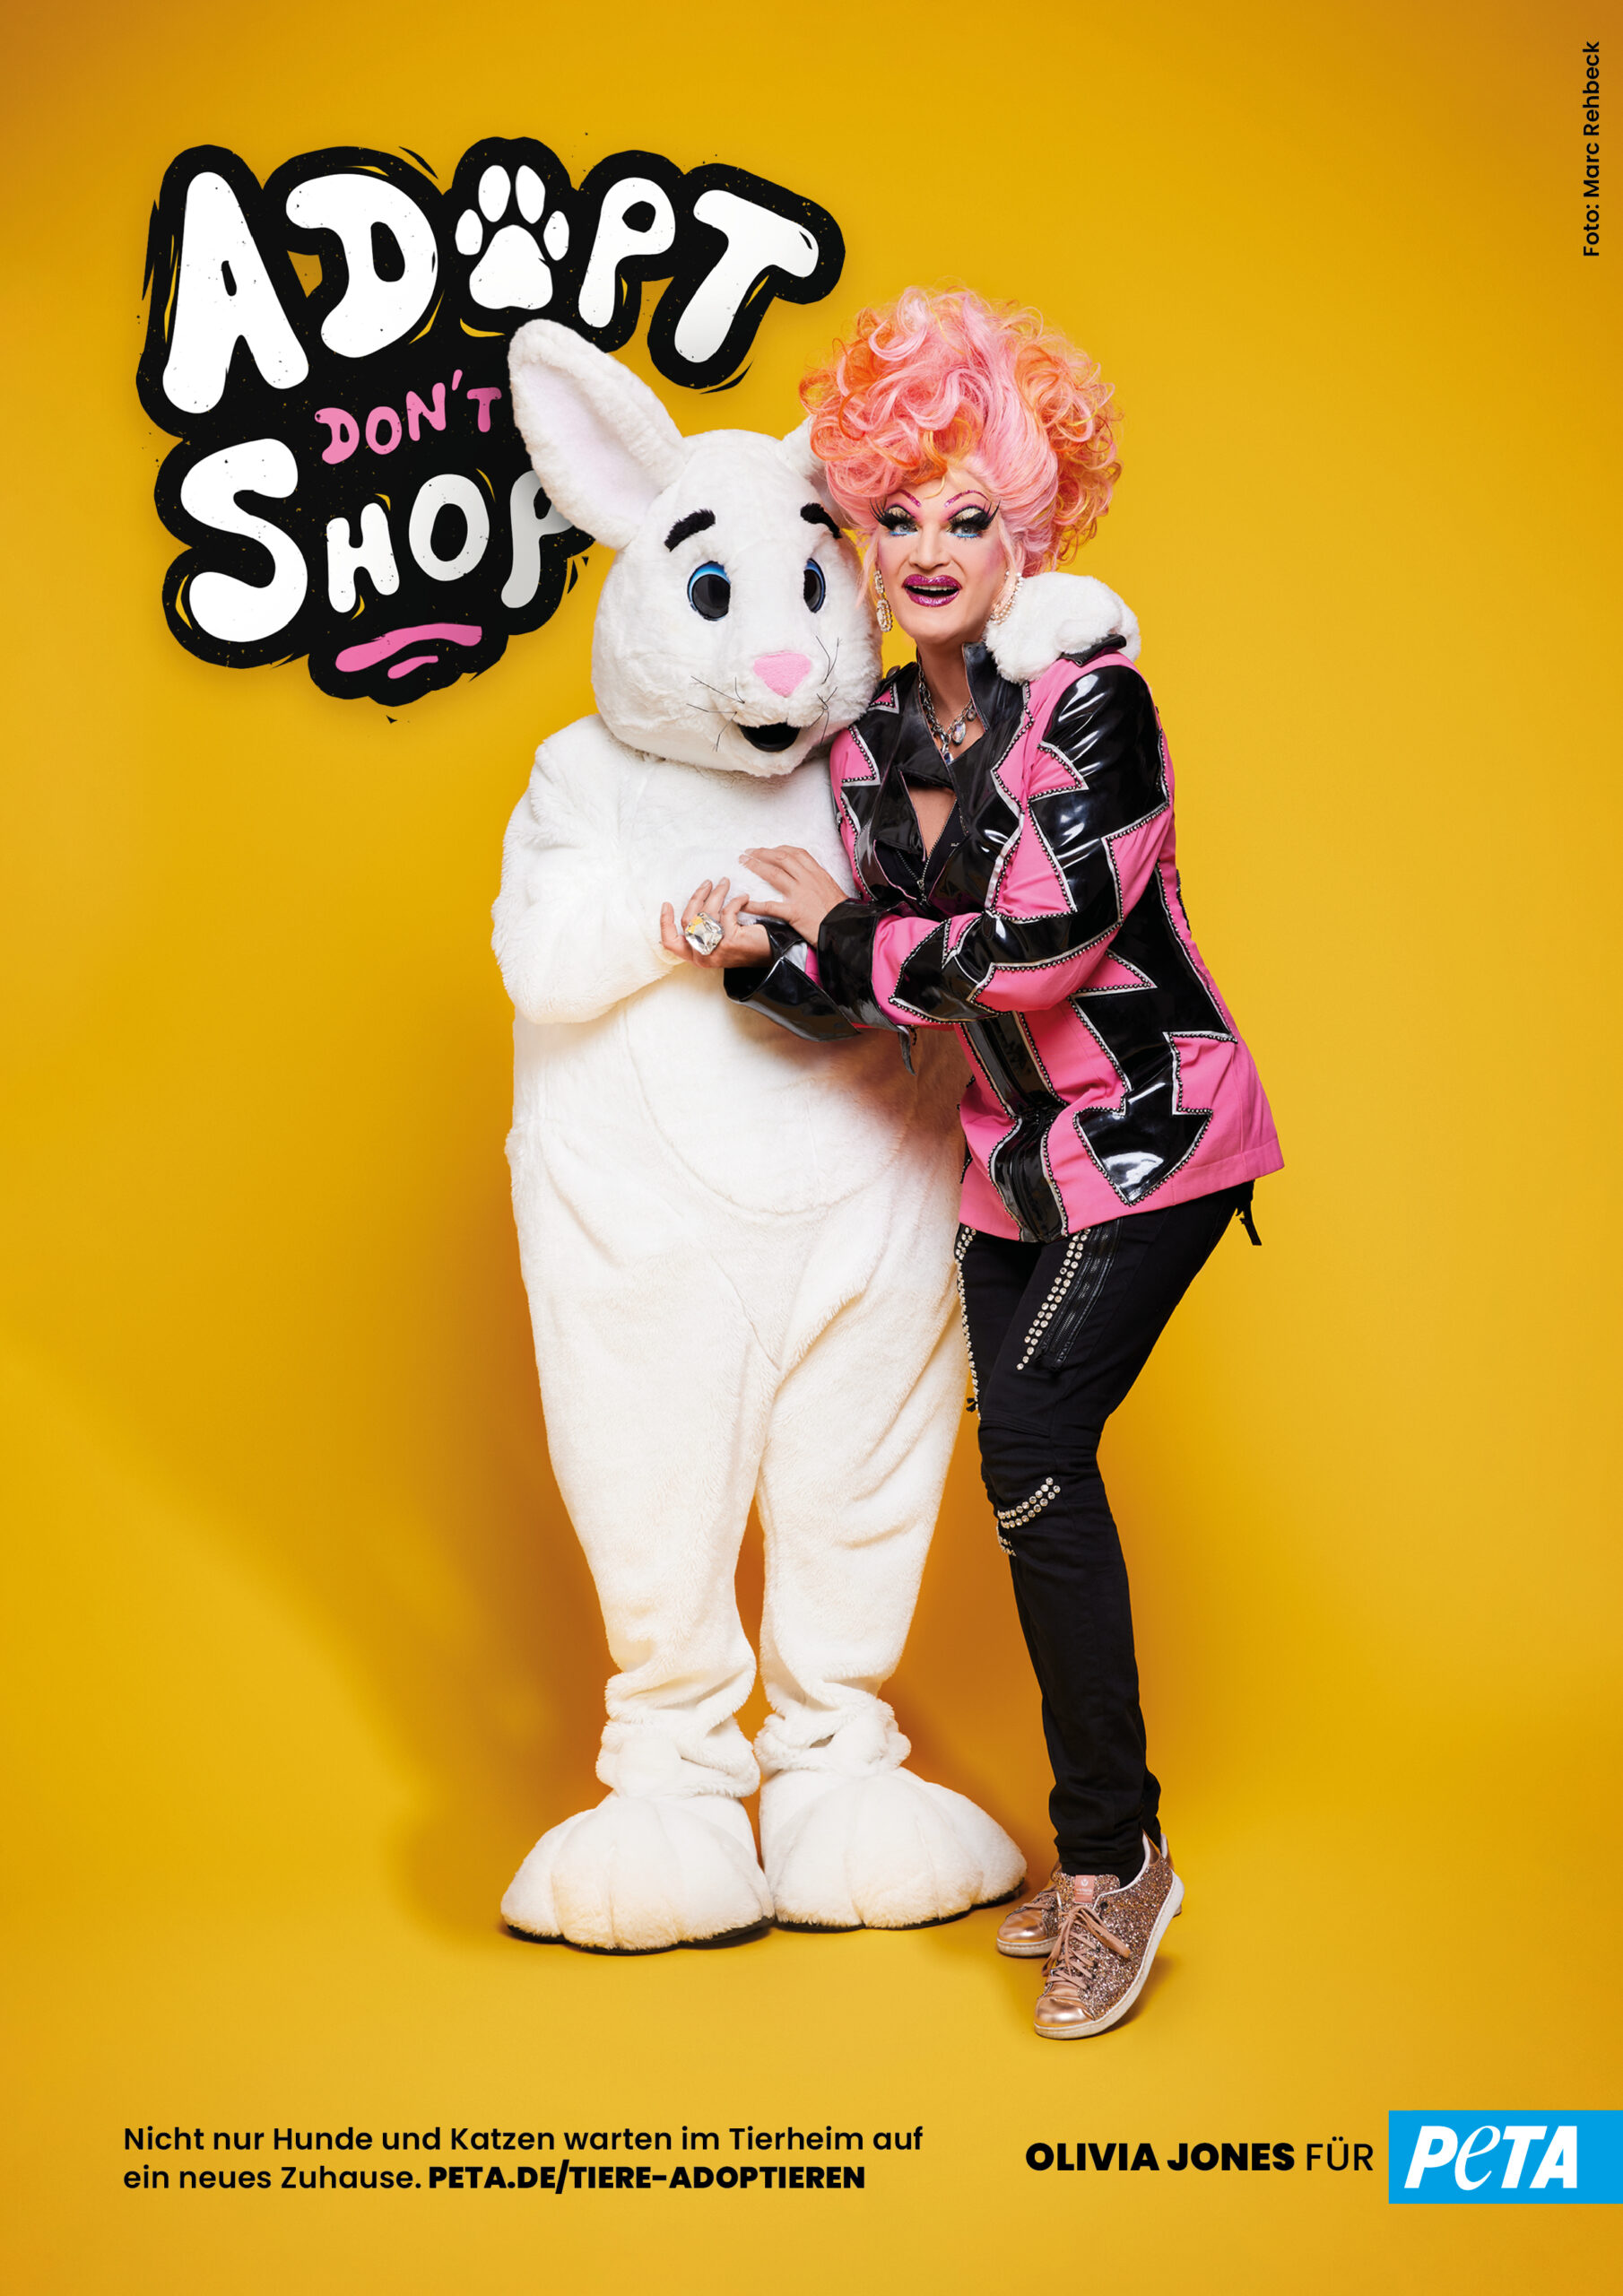 Olivia Jones kuschelt mit einem Plüsch-Hasen – Hintergrund ist eine Tierschutz-Kampagne.